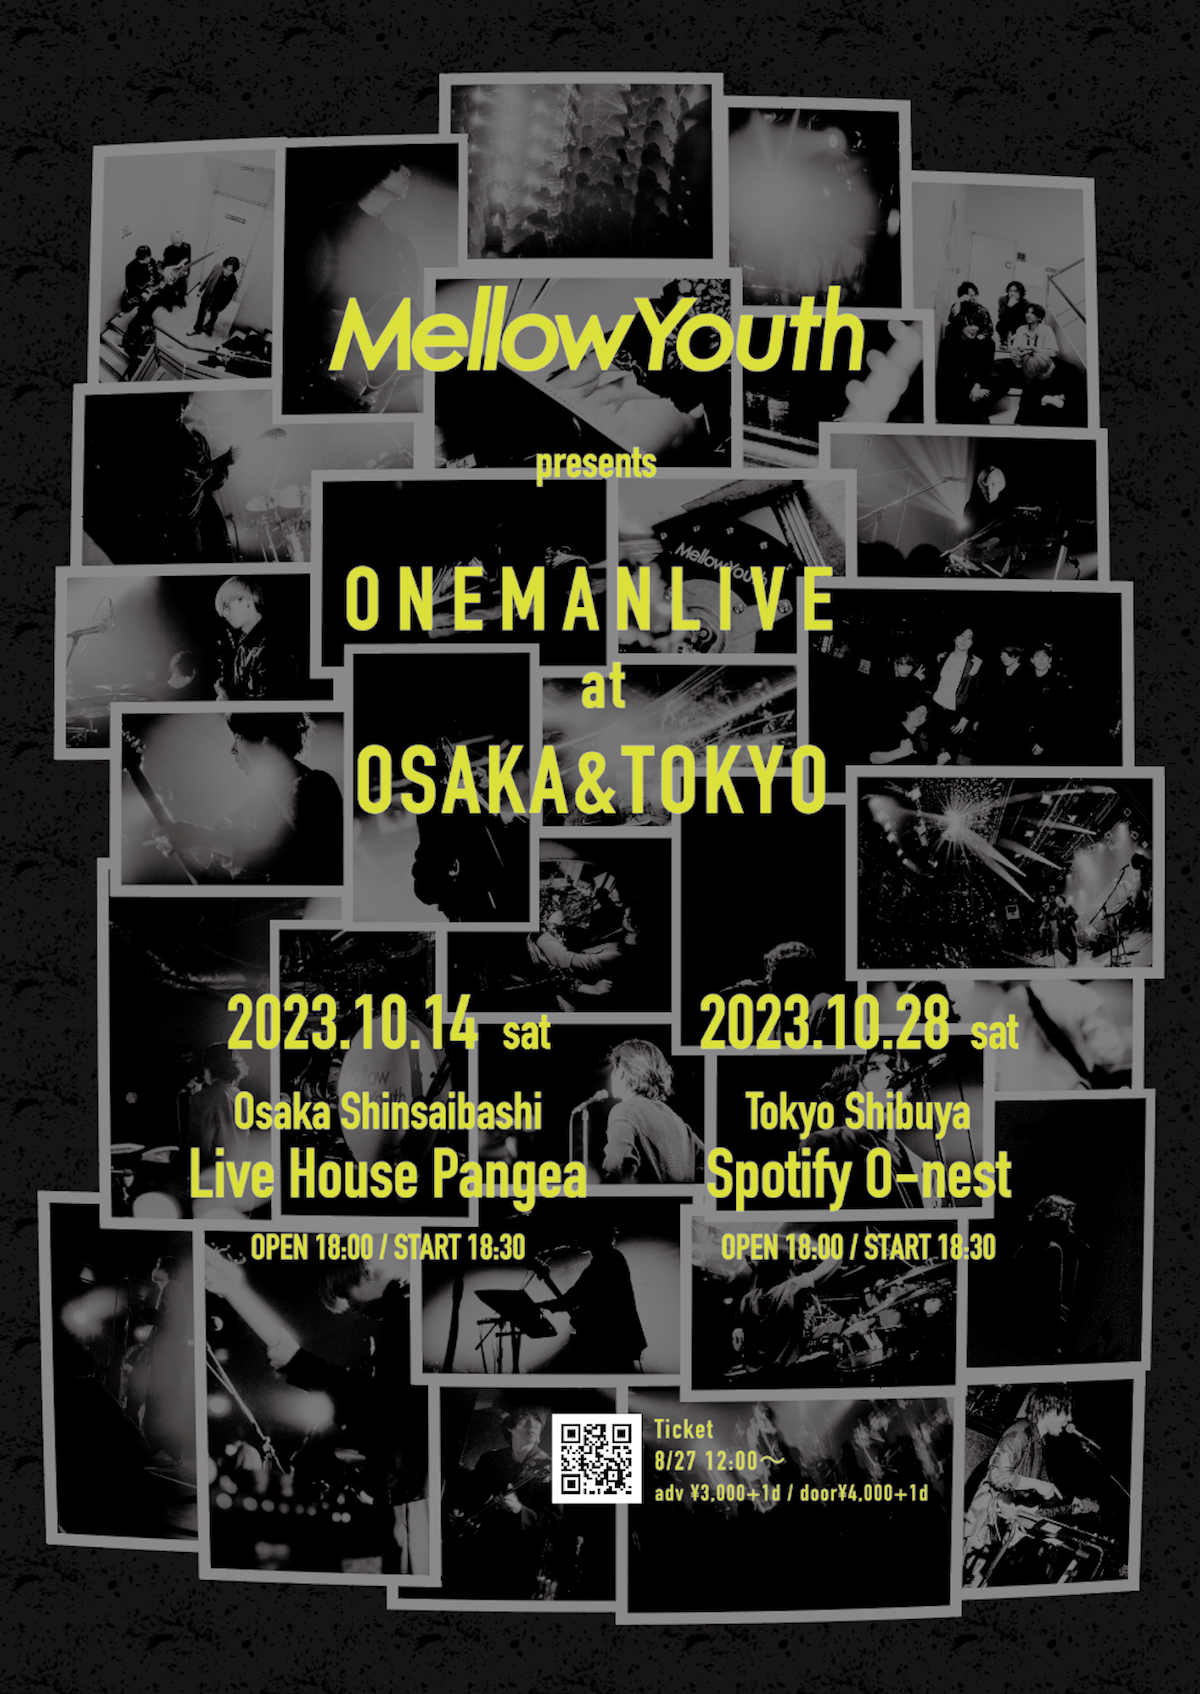 『Mellow Youth presents ONEMAN LIVE at OSAKA & TOKYO』